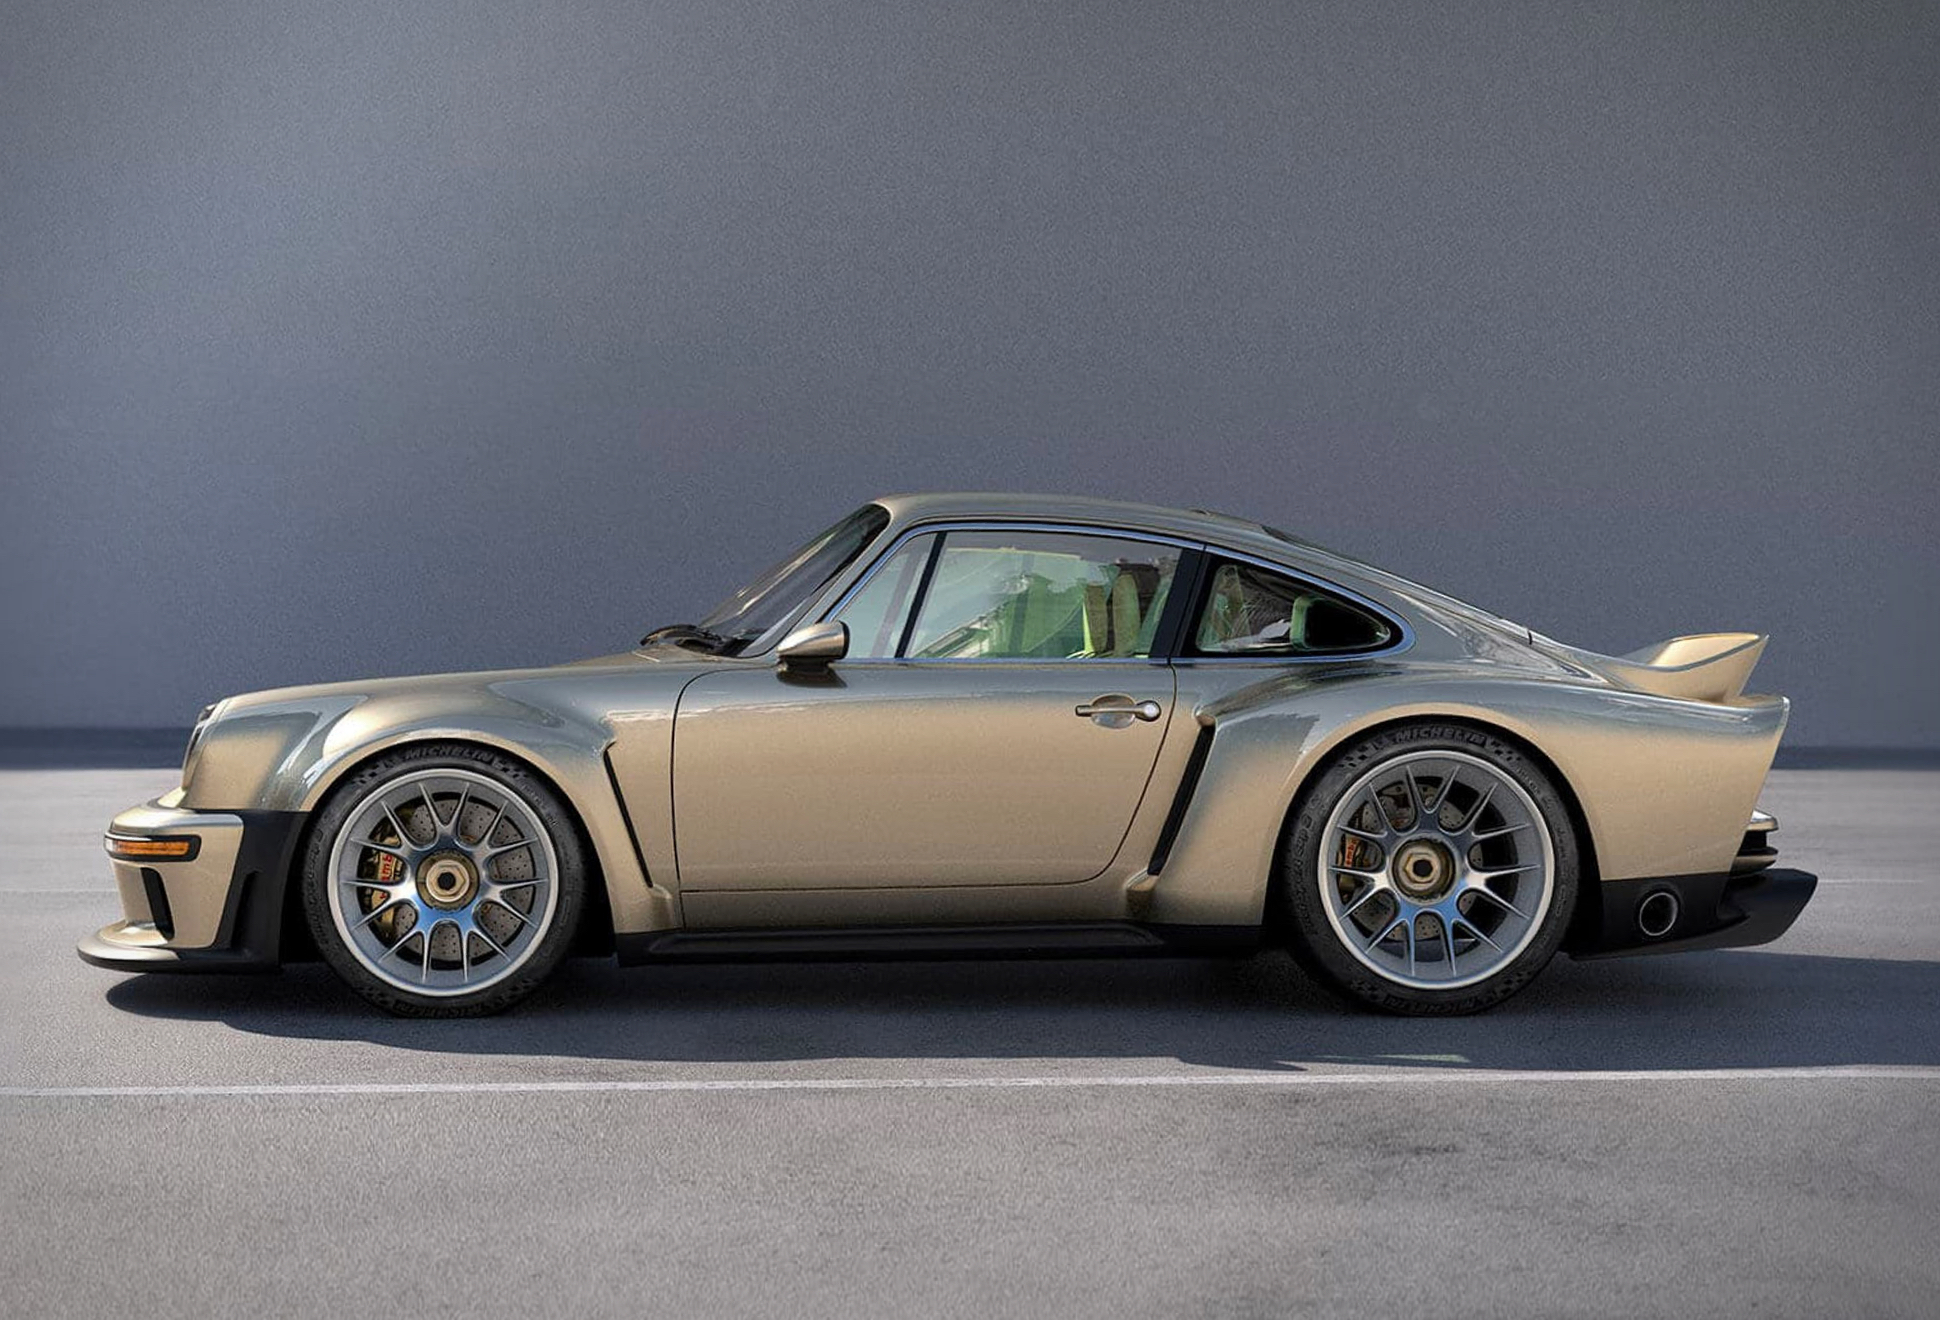 Singer Porsche 911 DLS Turbo | Image